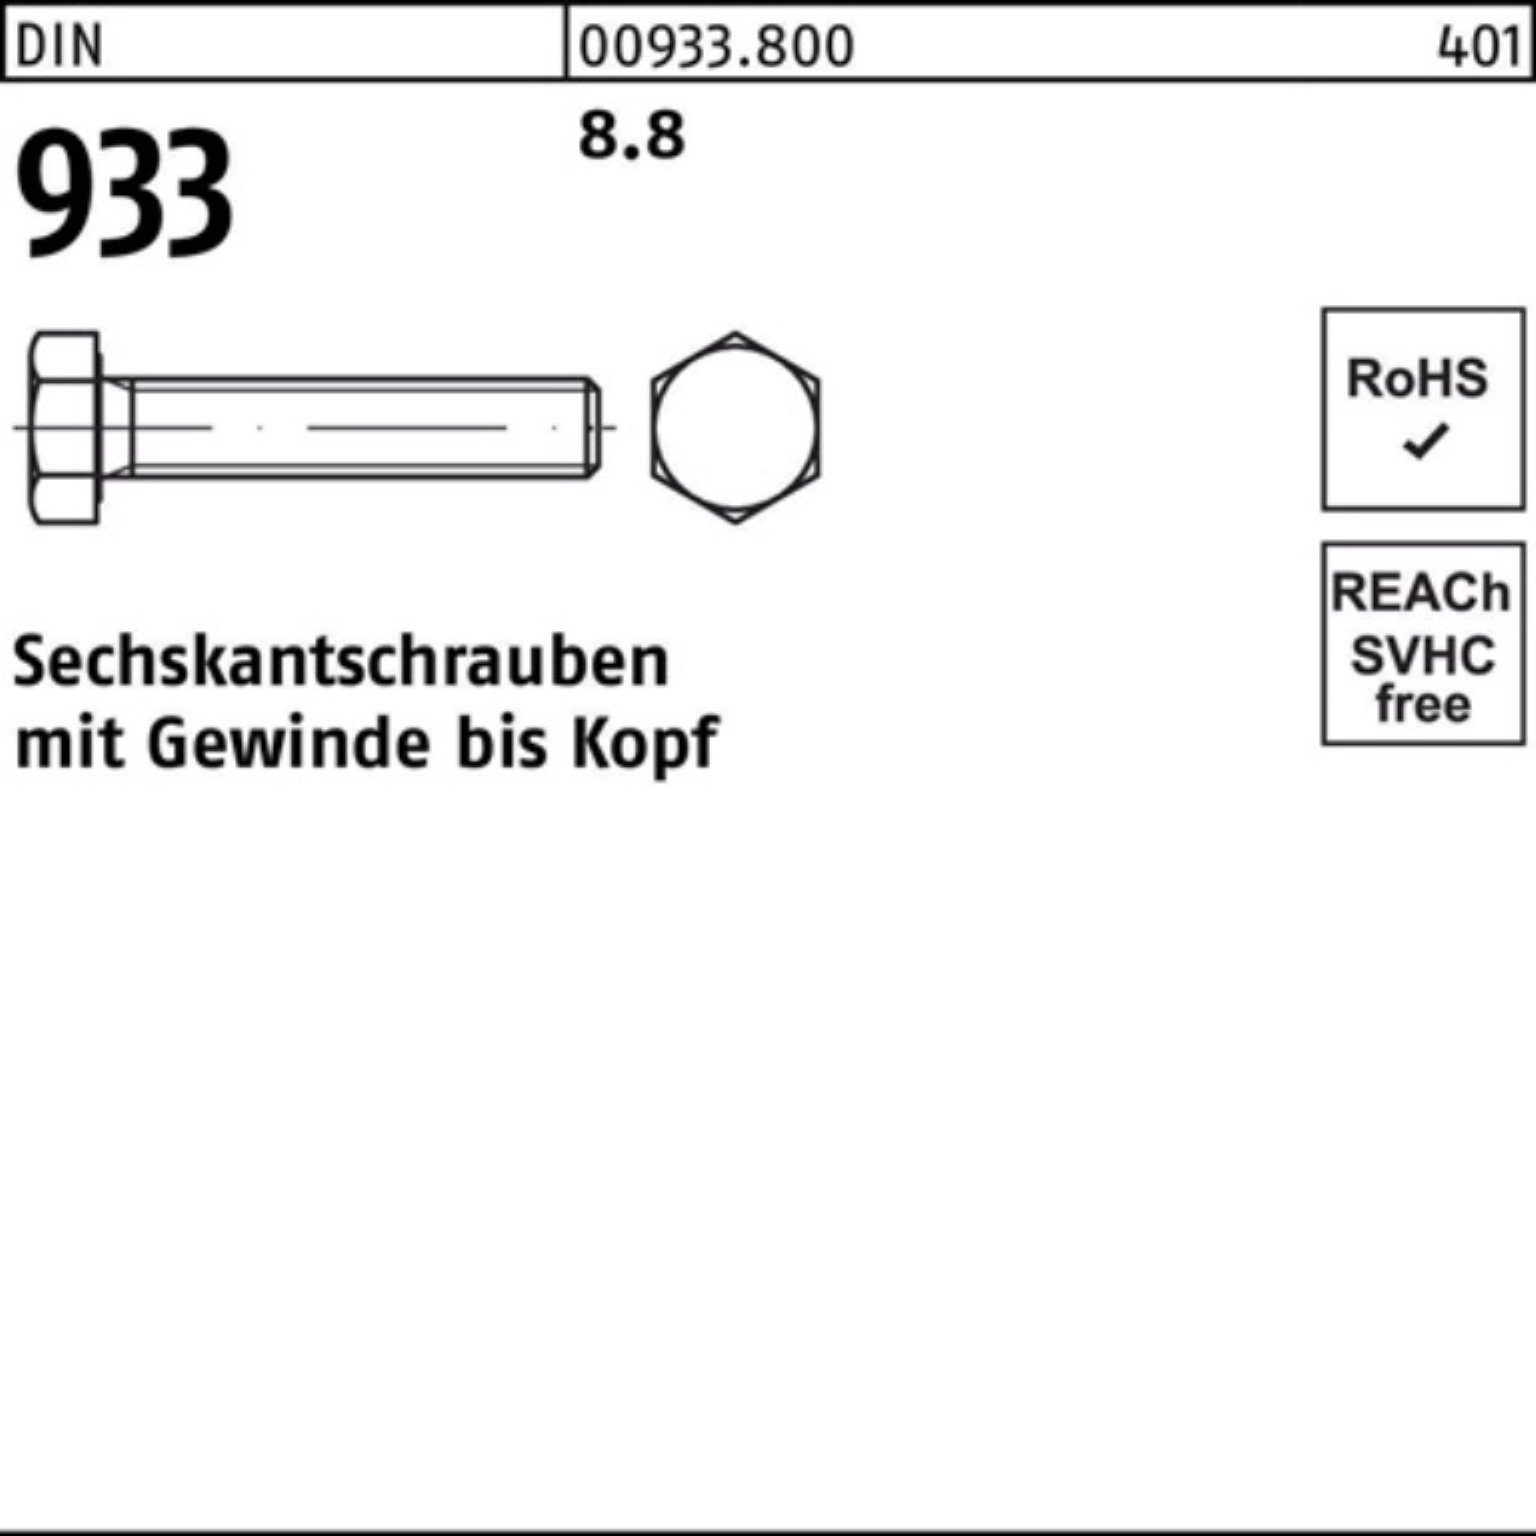 Reyher Sechskantschraube 100er M24x DIN 933 Stück 10 DIN Pack Sechskantschraube 933 VG 8.8 90